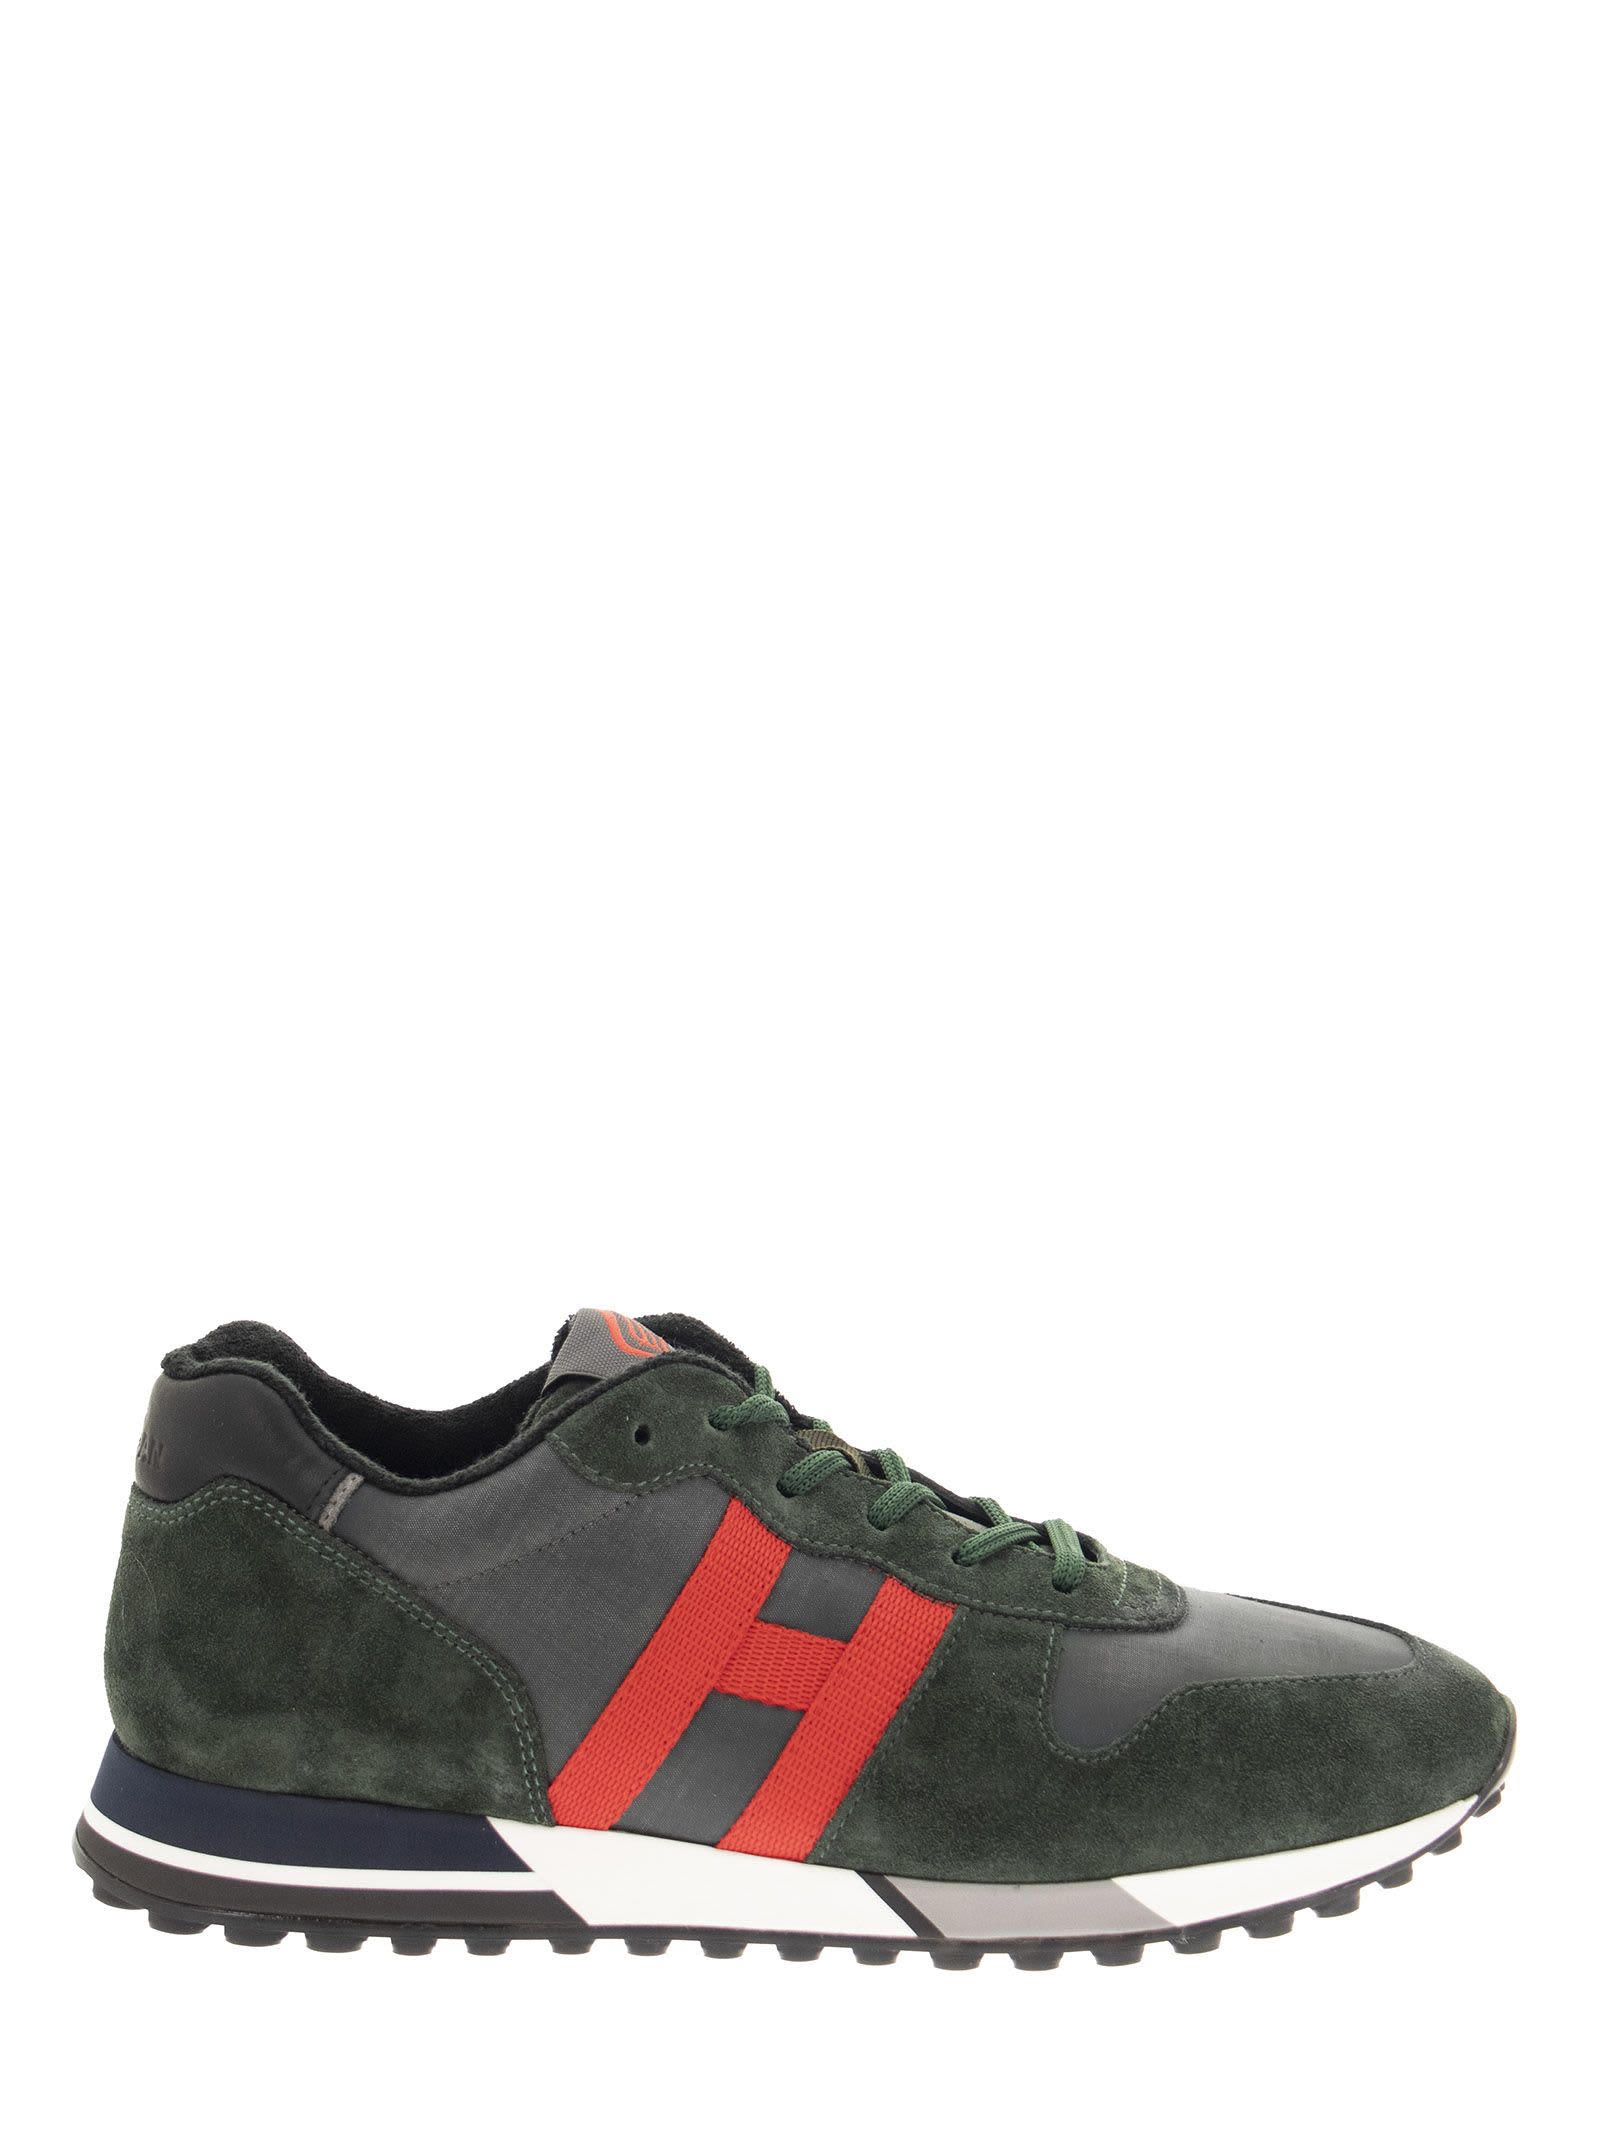 Hogan H383 - Suede Sneakers